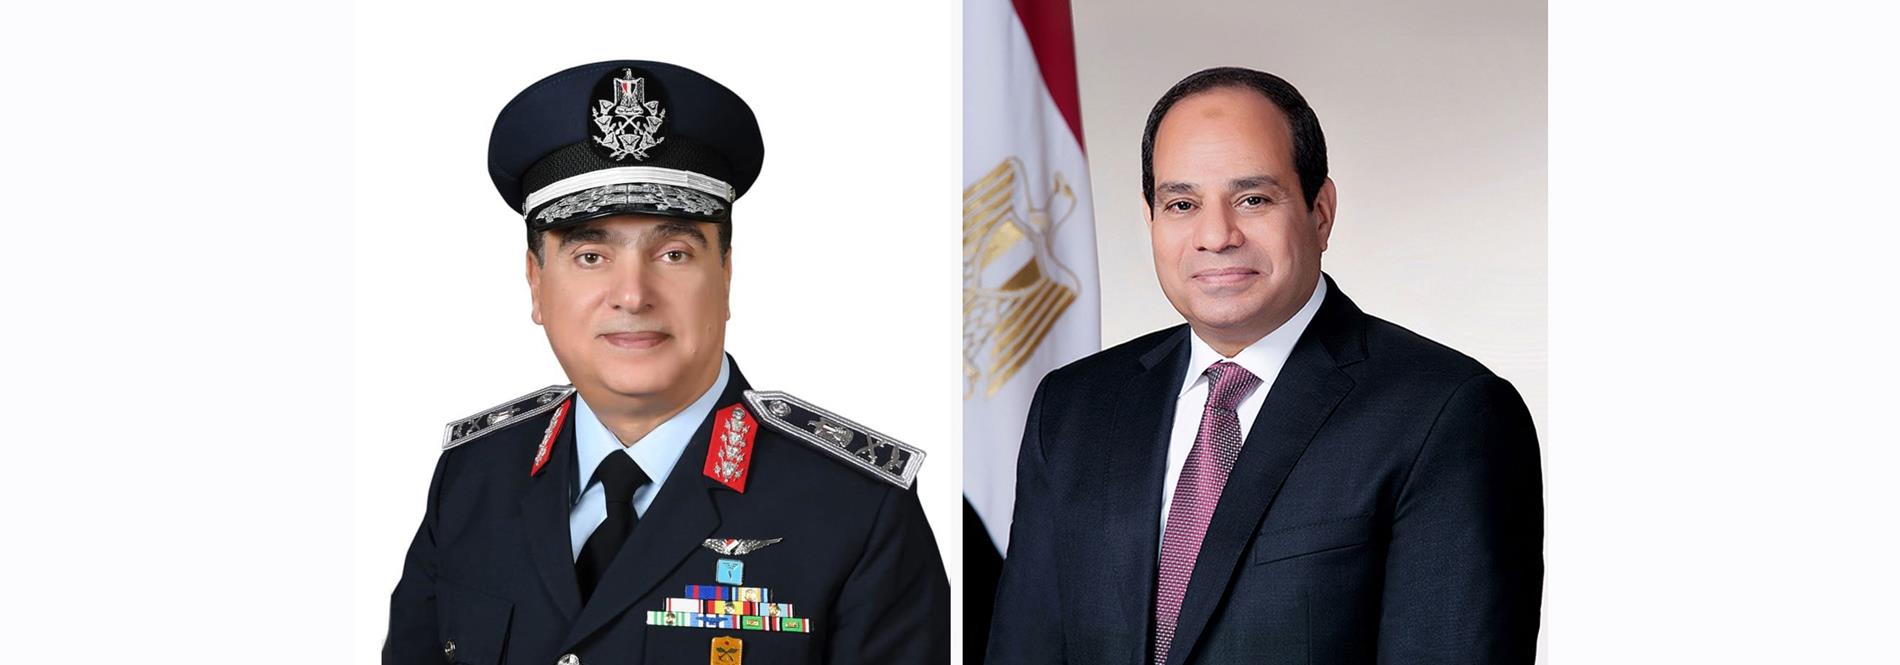 الرئيس عبد الفتاح السيسي يصدر قرارًا جمهوريًا بتعيين قائدًا للقوات الجوية